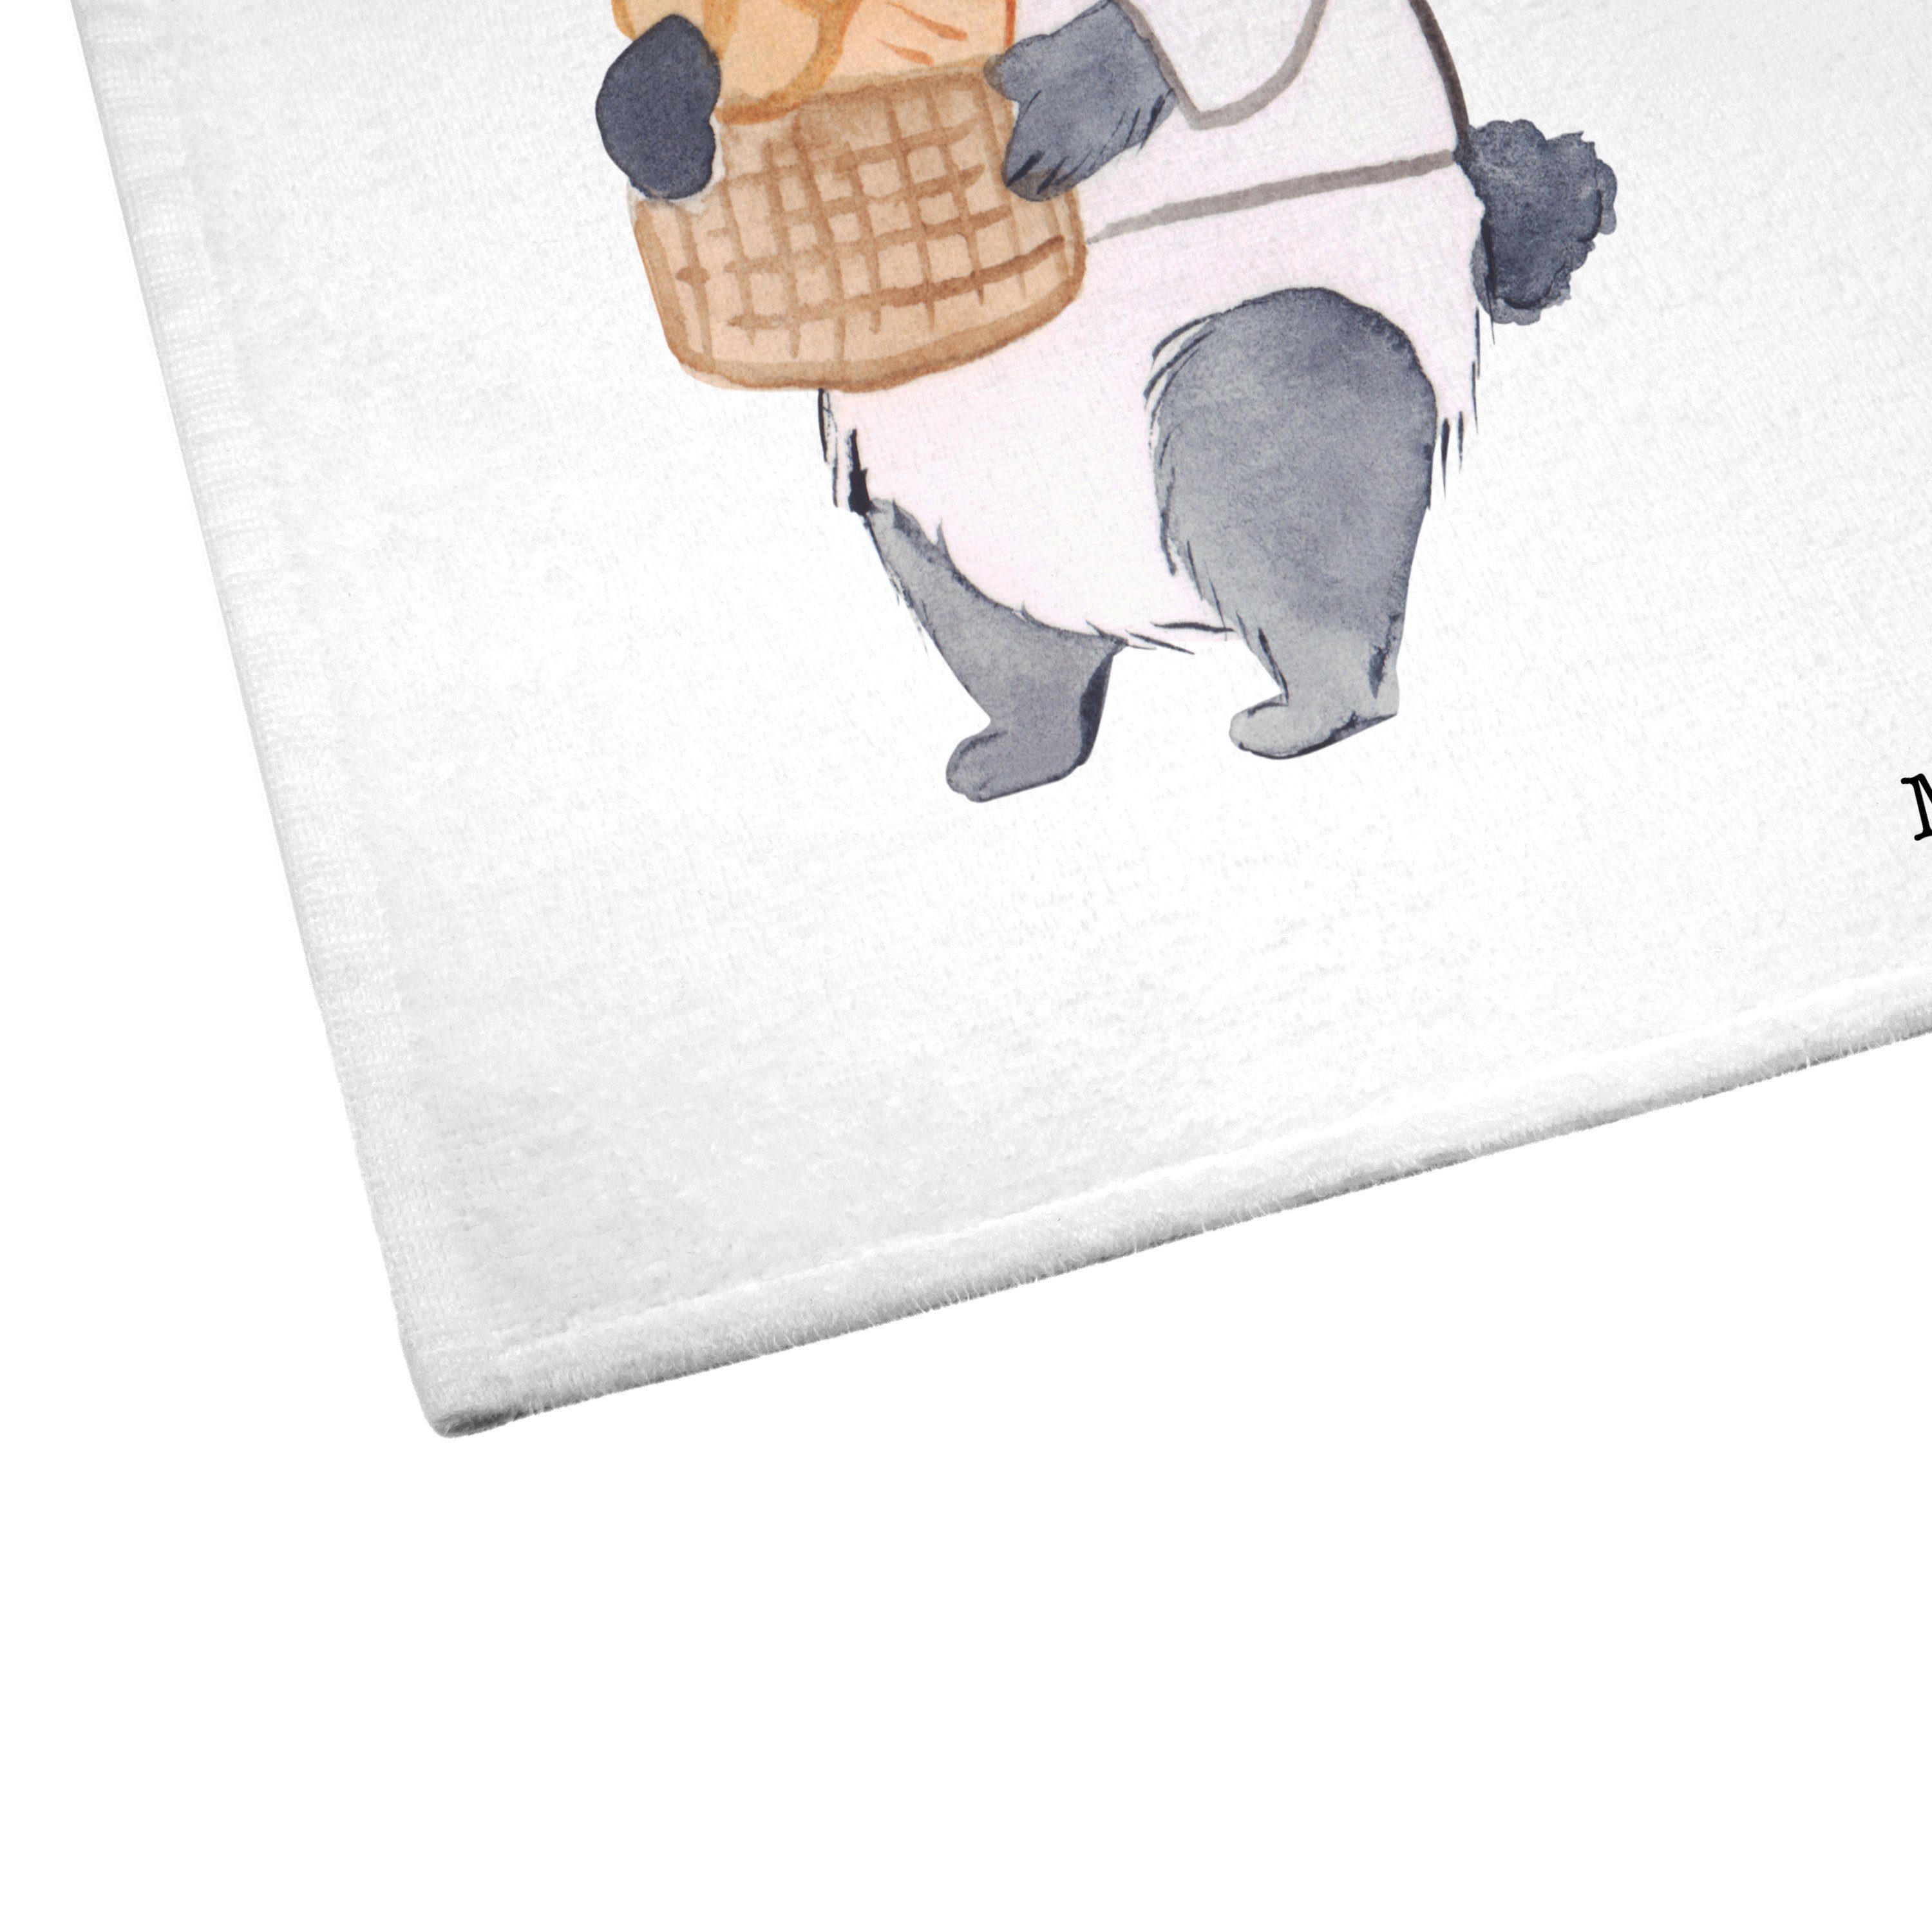 Panda Handtuch Herz Backware, - (1-St) Weiß Mr. Bäckereifachverkäufer Mrs. Gästetuch, mit & Geschenk, -